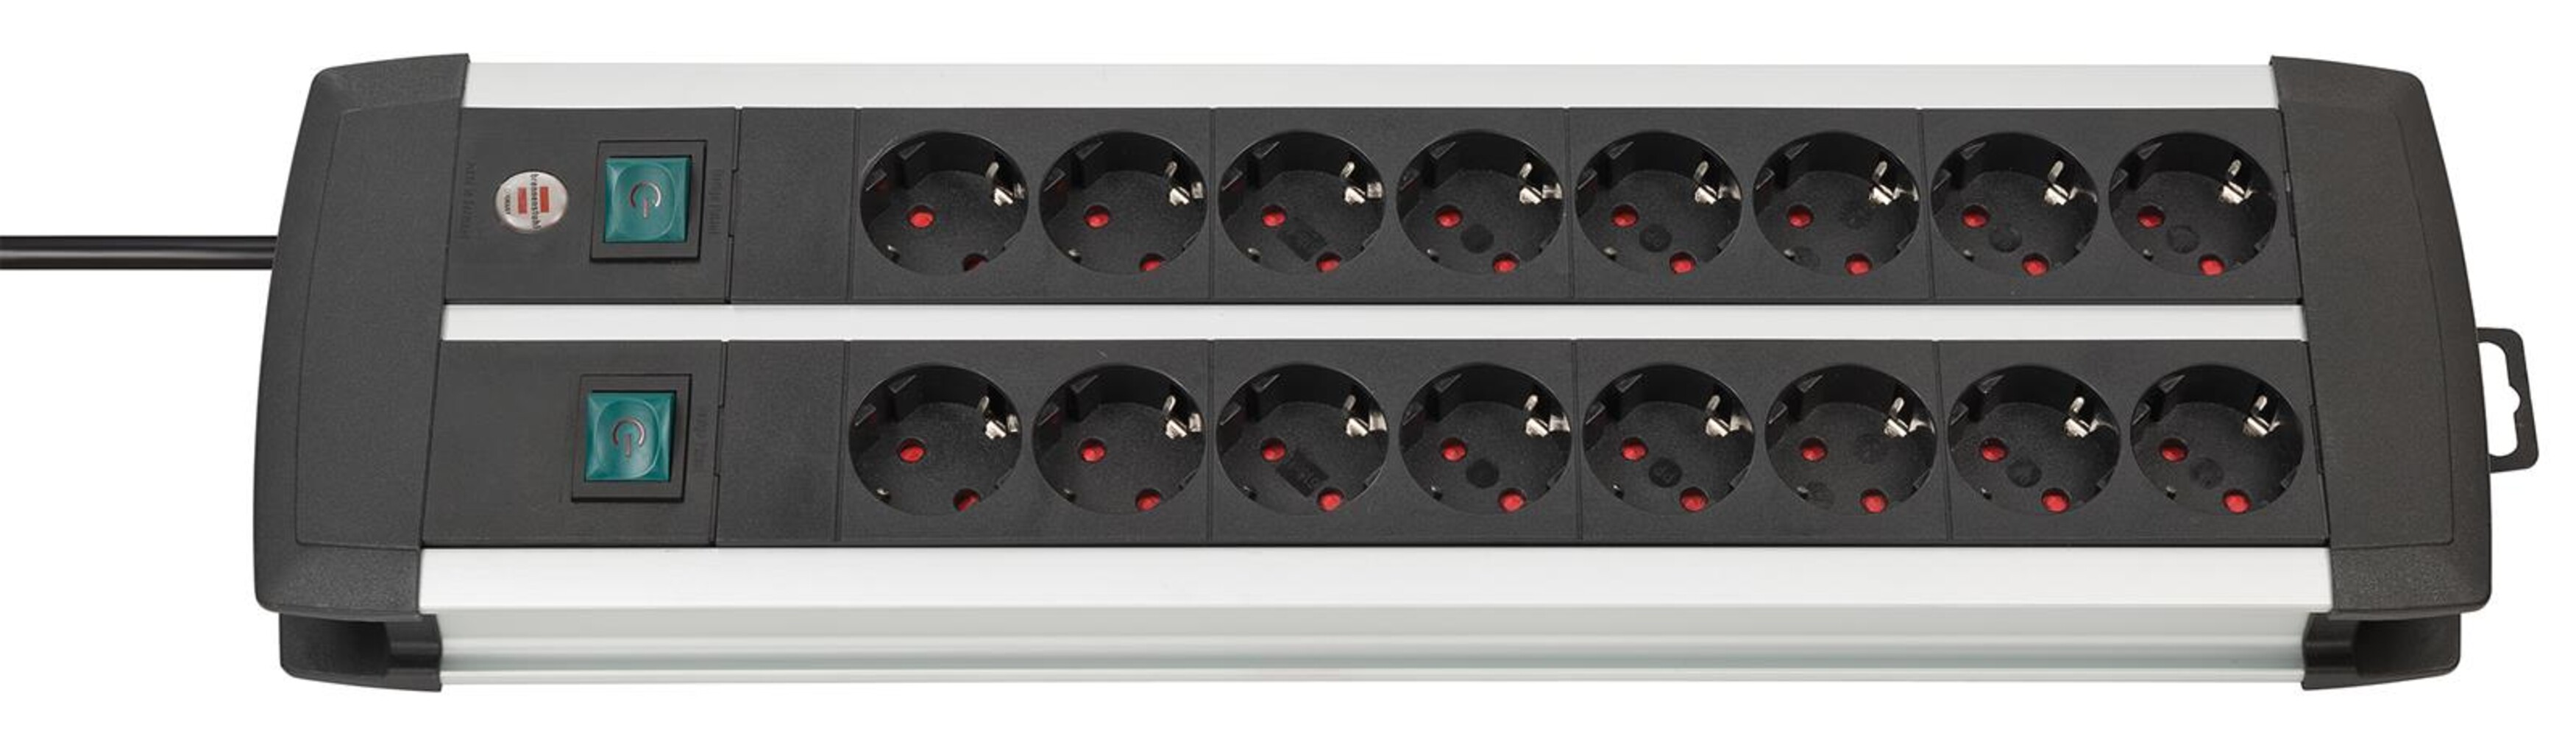 Hochwertige Steckdosenleiste von Brennenstuhl mit Premium Alu Line Technik in Duo schwarz, 16 fach, 3m Kabel, H05VV F 3G1 5, 8 fach schaltbar